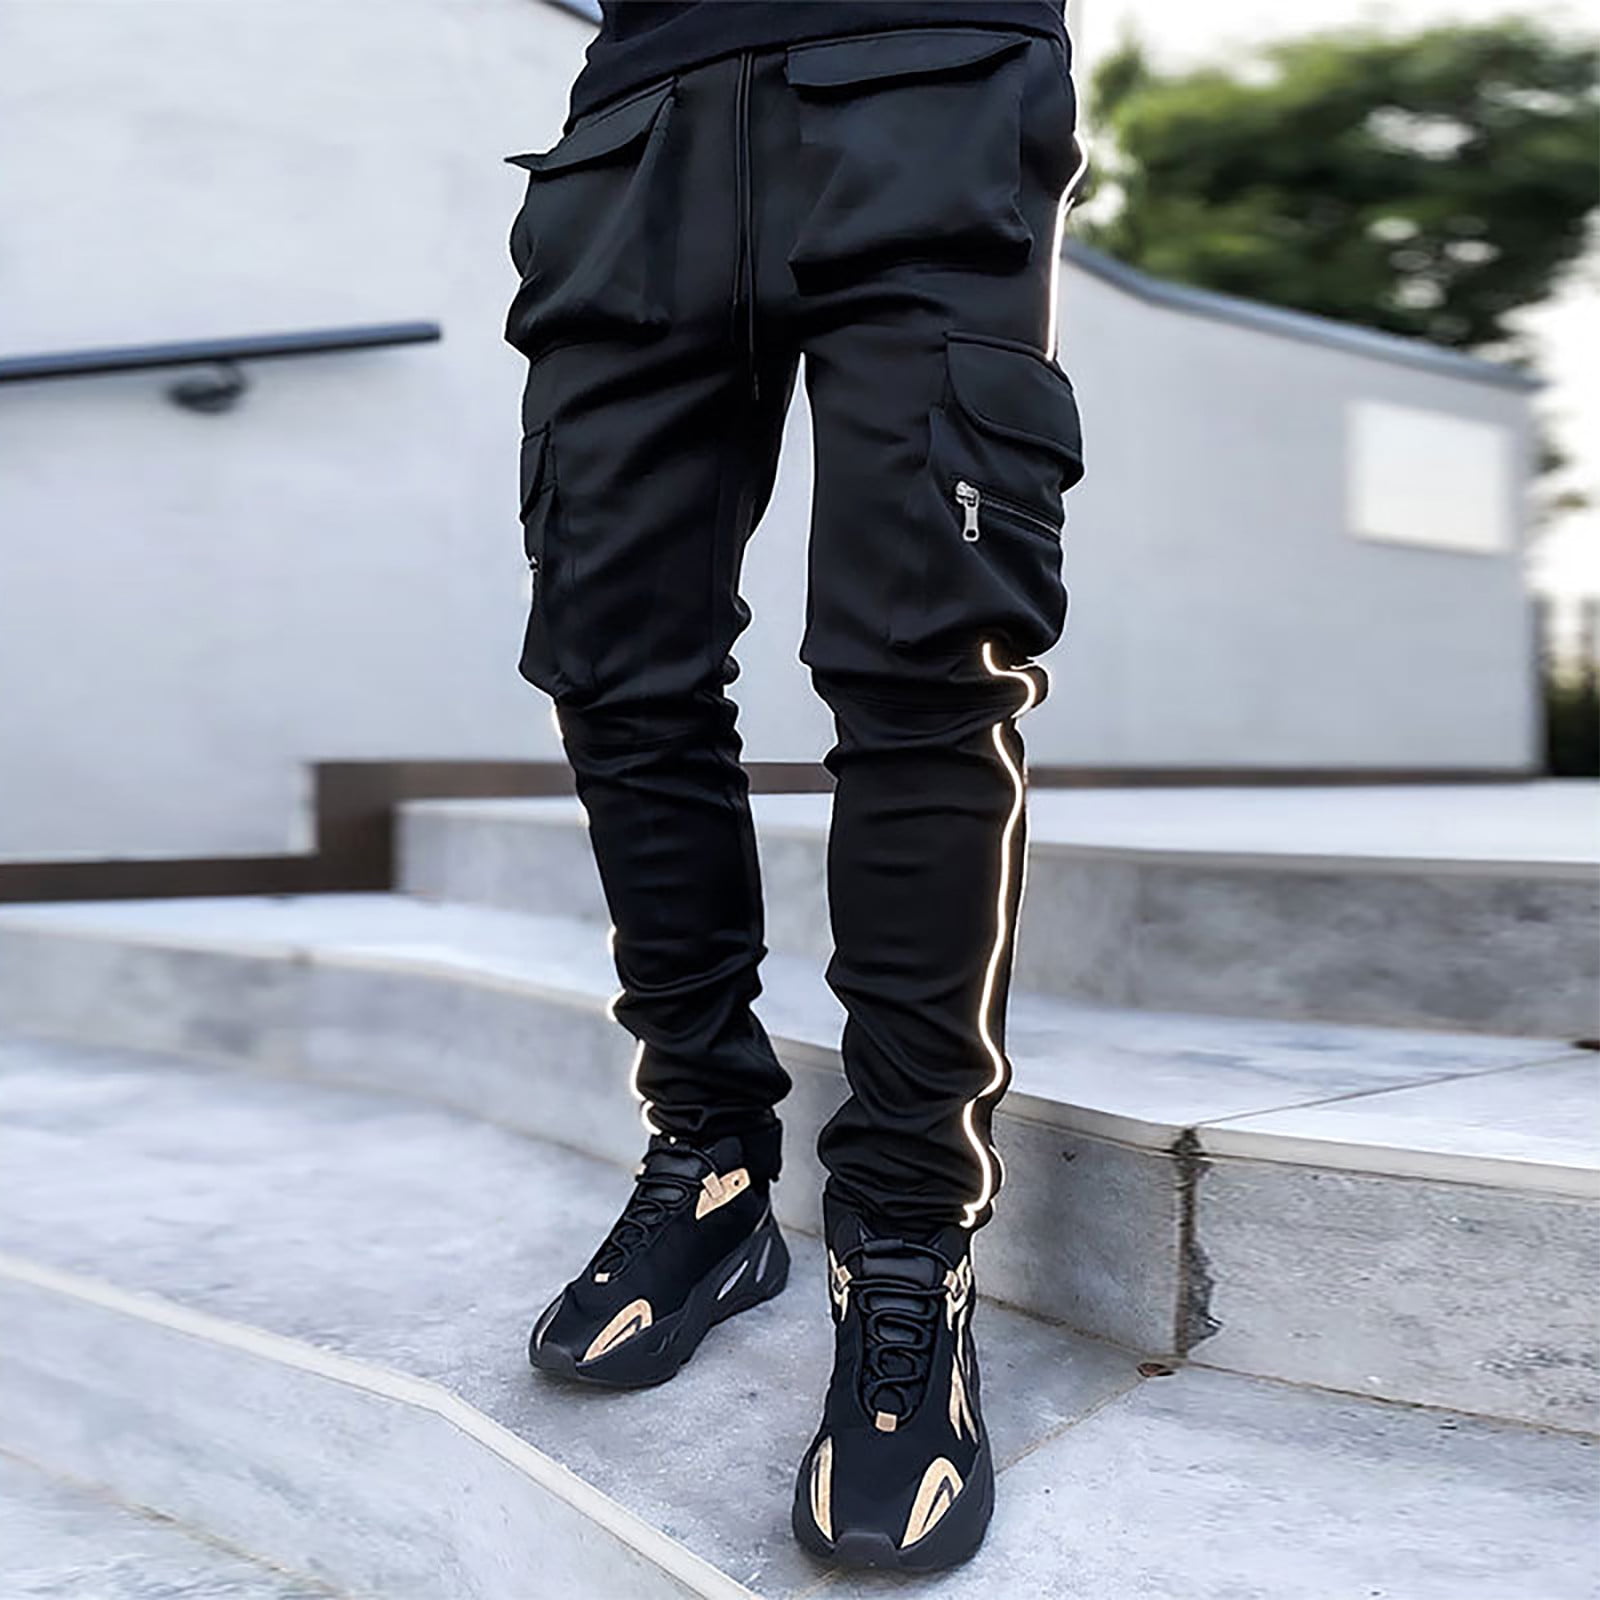 Men's new black multi-pocket pants with drawstring design hip-hop